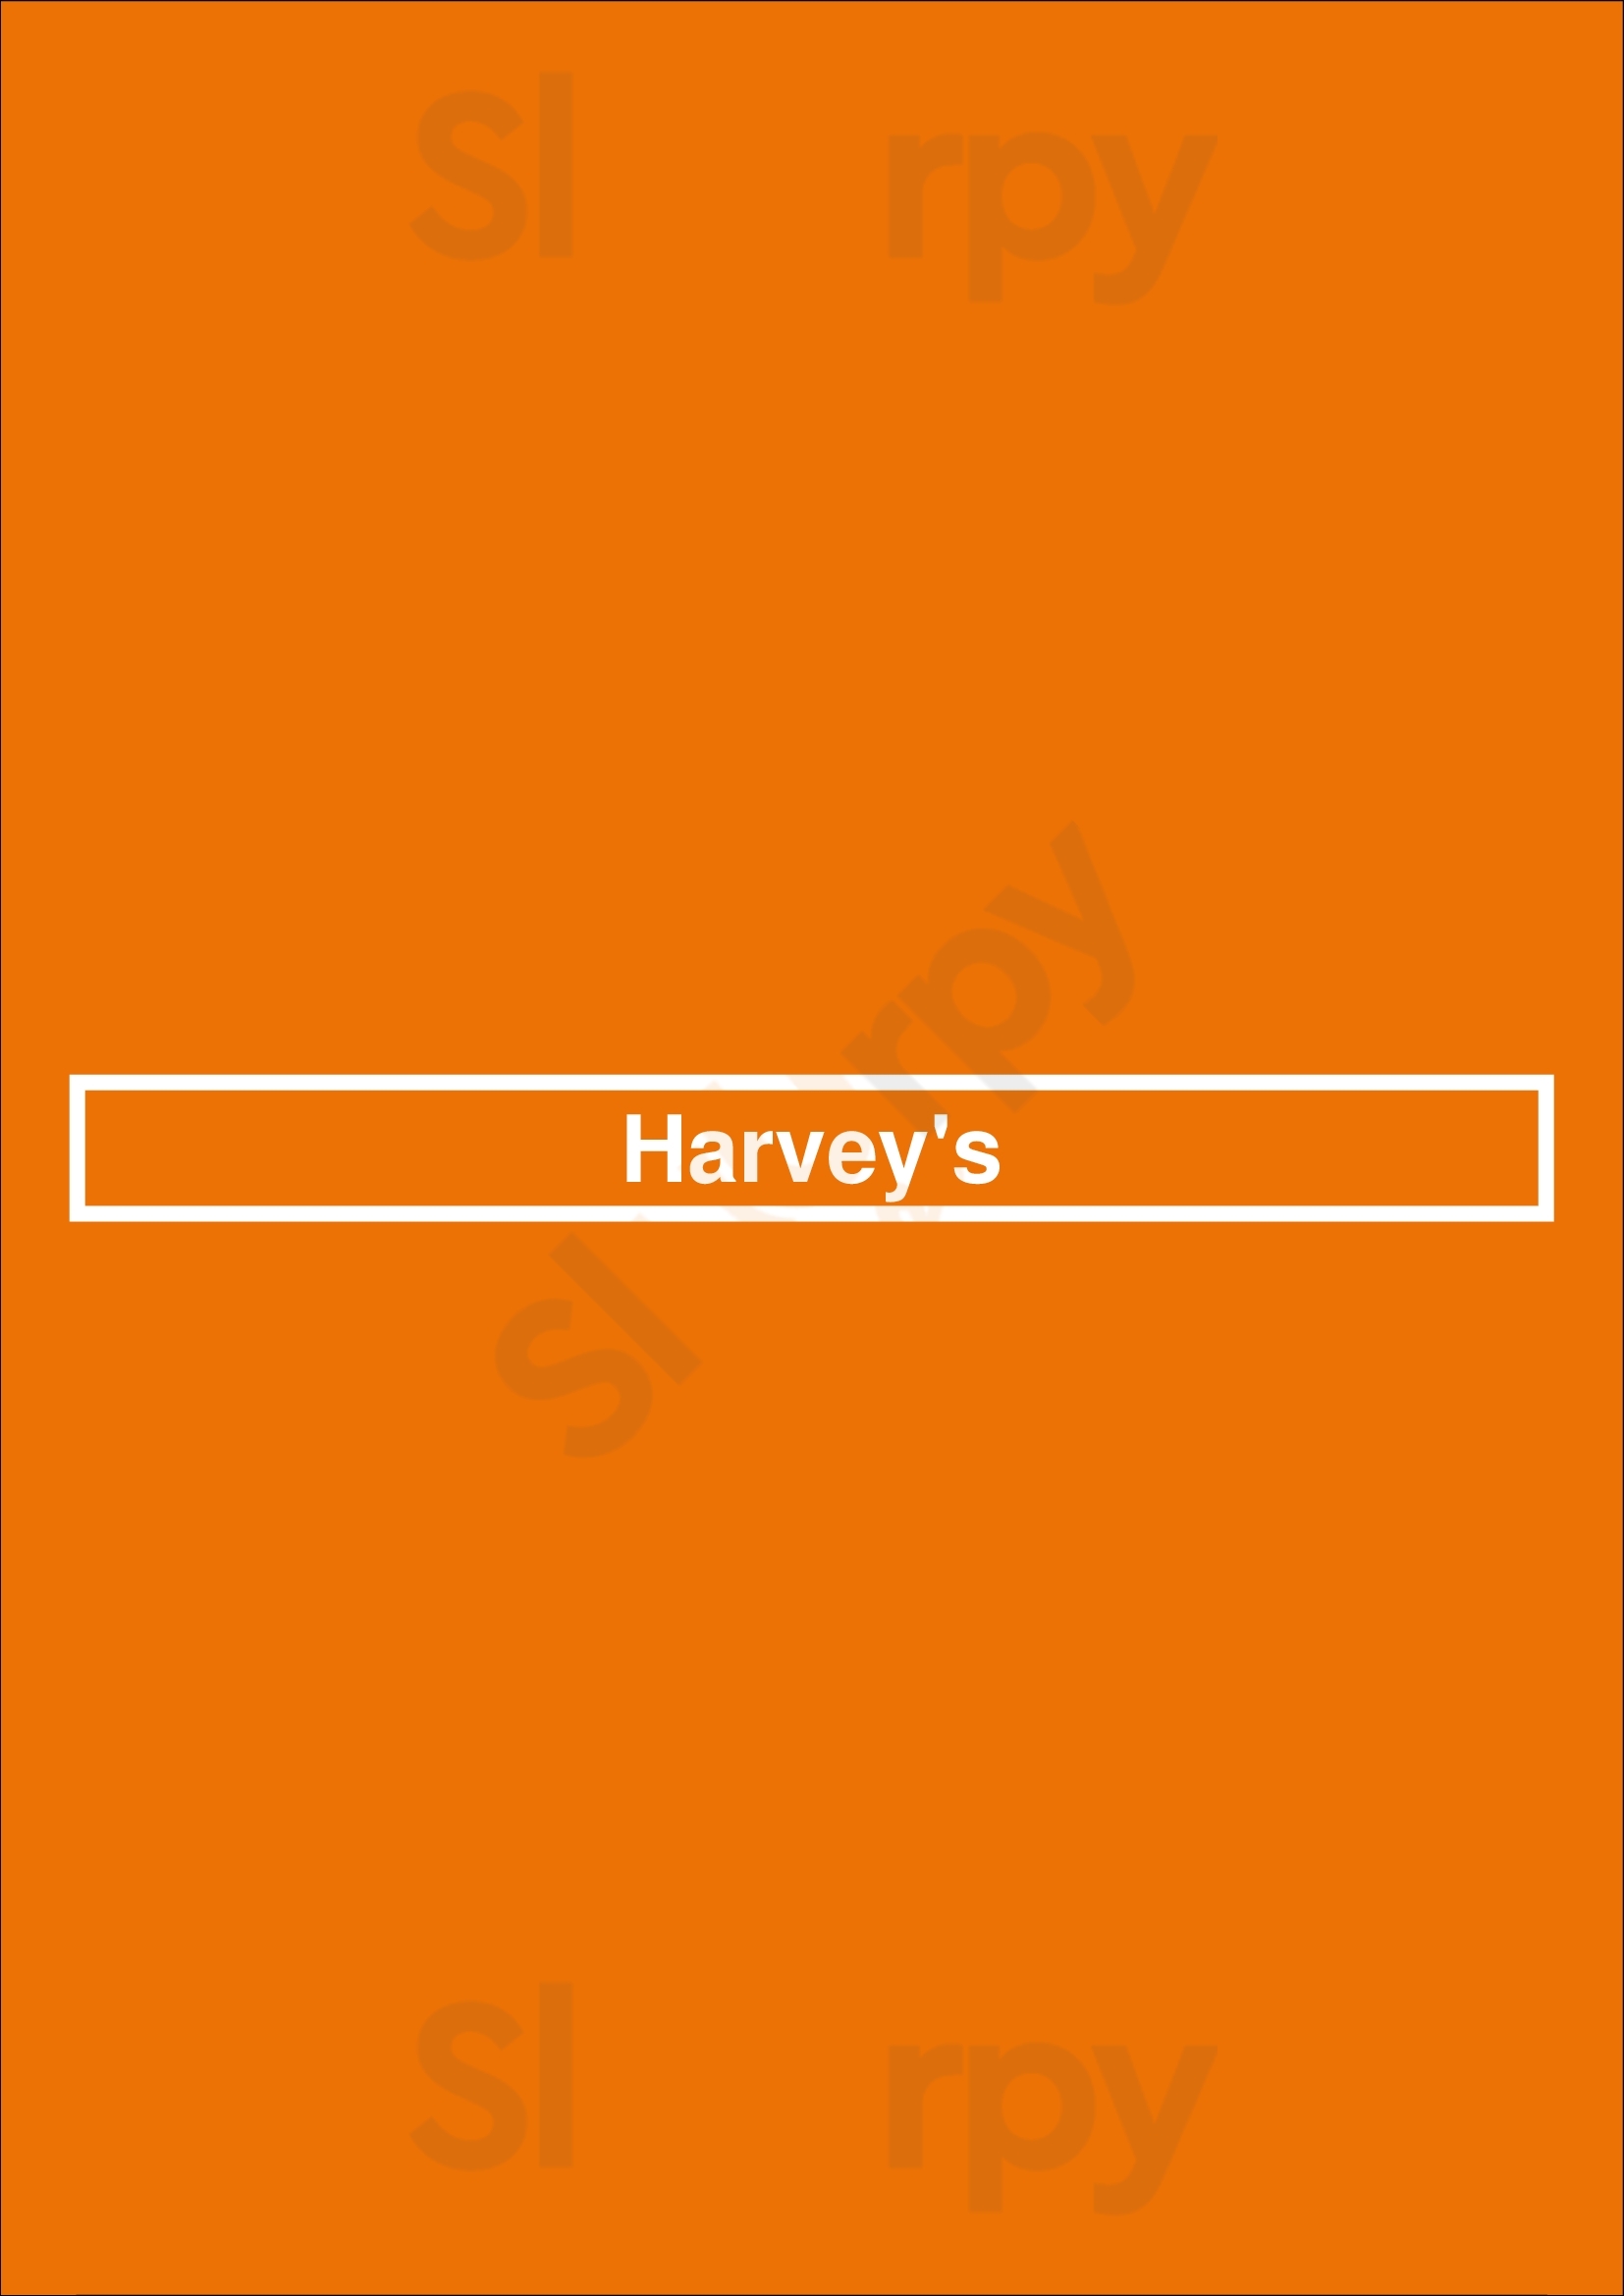 Harvey's London Menu - 1